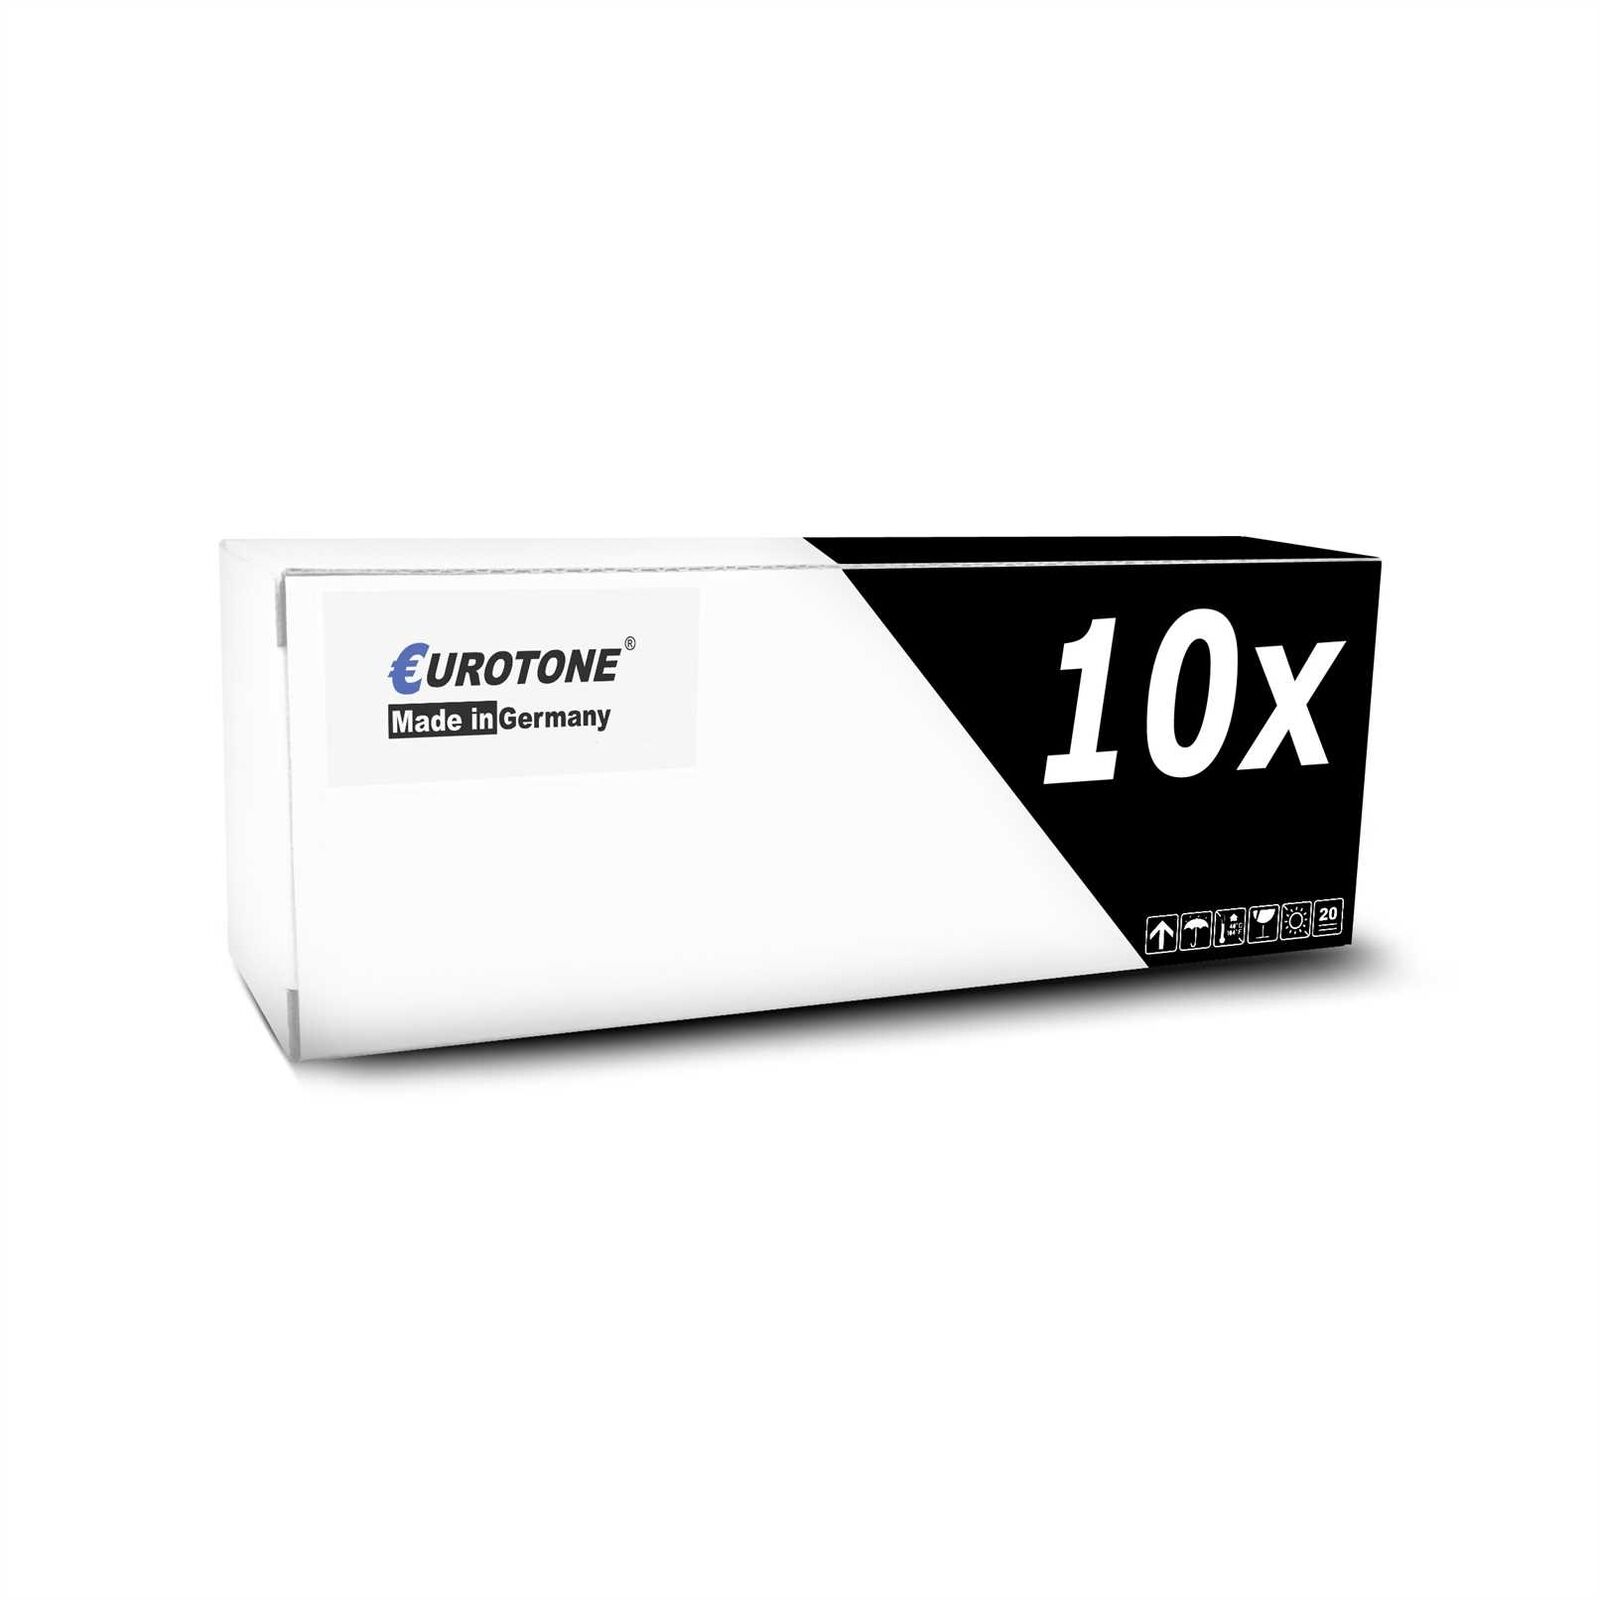 10x Cartridge for Lexmark